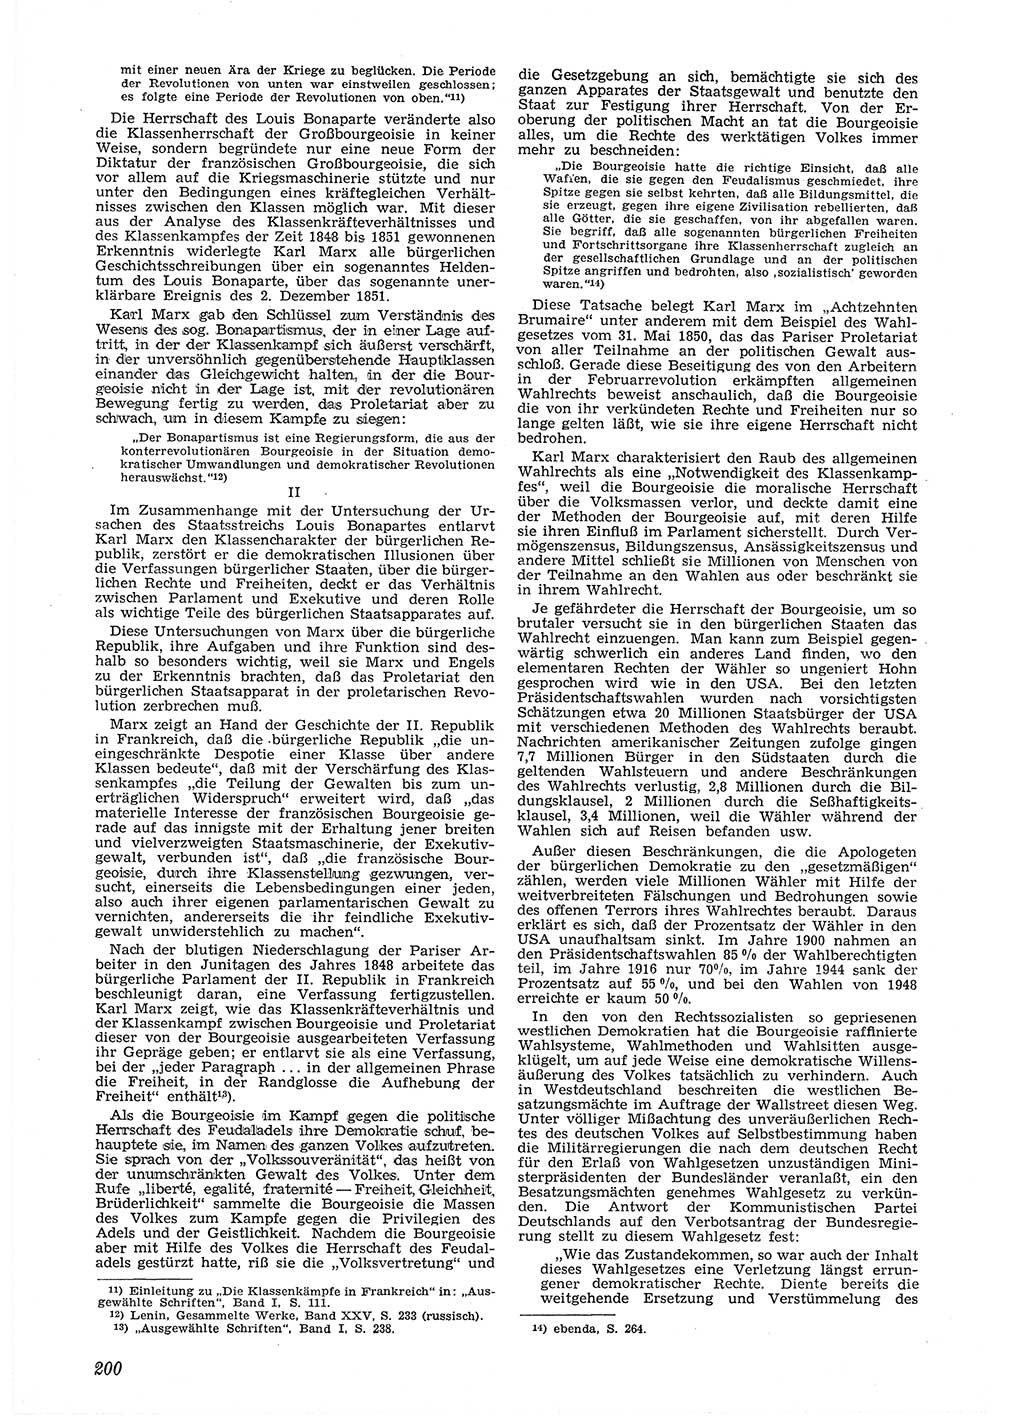 Neue Justiz (NJ), Zeitschrift für Recht und Rechtswissenschaft [Deutsche Demokratische Republik (DDR)], 6. Jahrgang 1952, Seite 200 (NJ DDR 1952, S. 200)